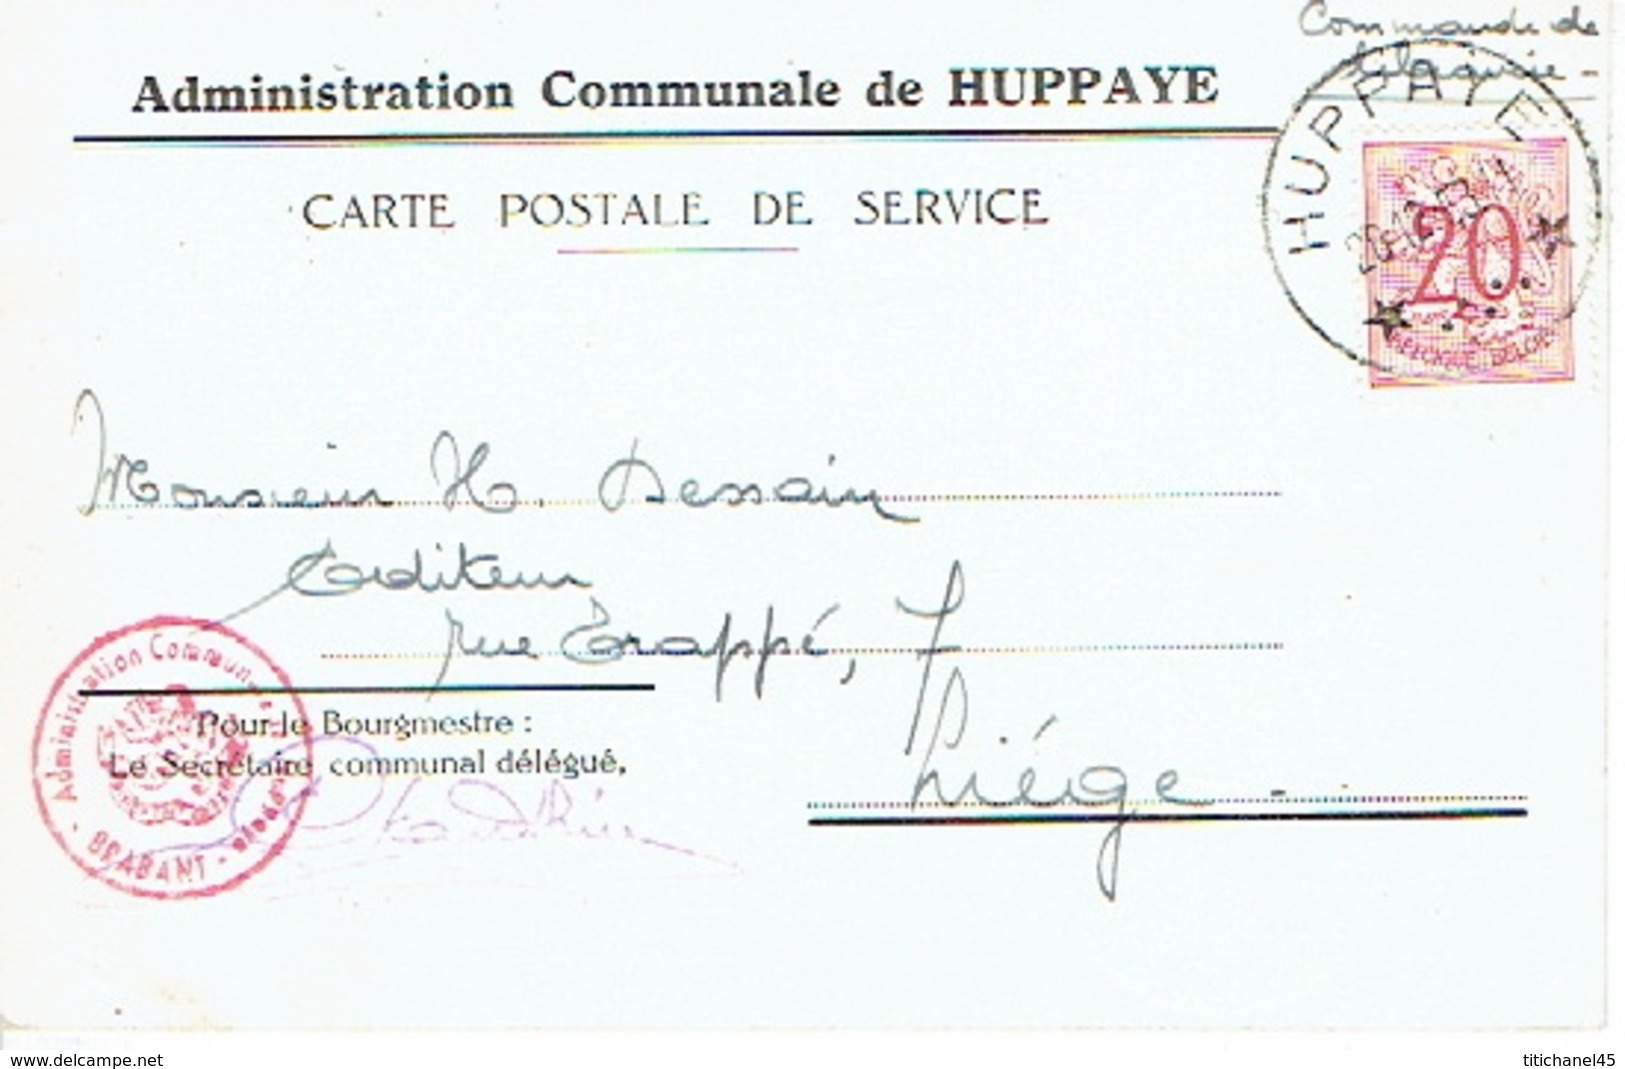 Carte De Service - ADMINISTRATION COMMUNALE DE HUPPAYE - Cachet à étoiles HUPPAYE 30.12.1953 - Cachets à étoiles